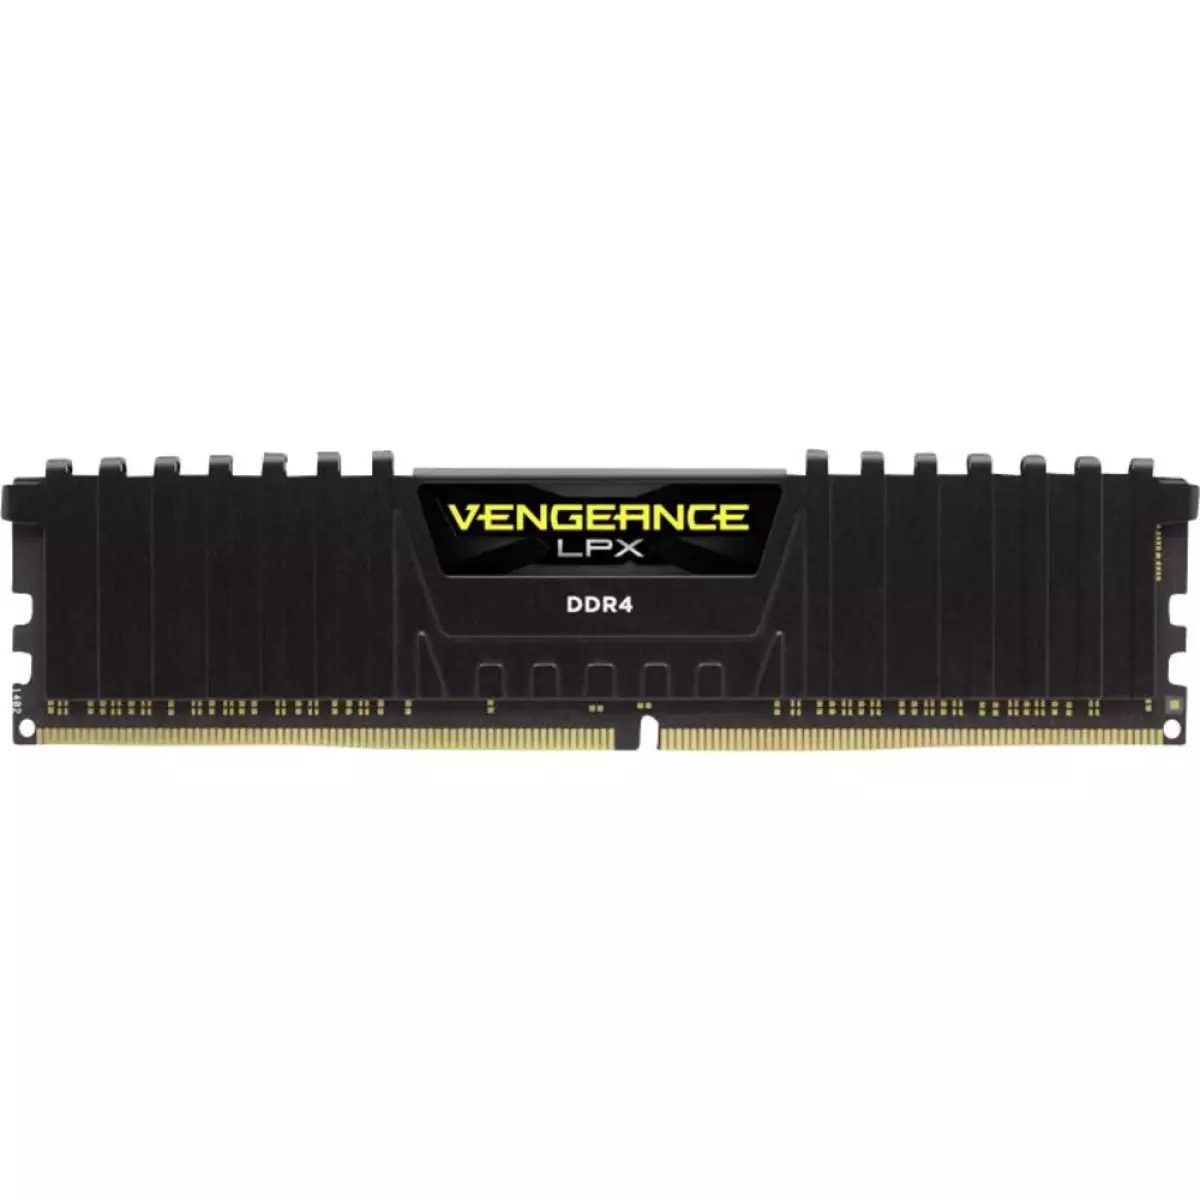 RAM PC Corsair Vengeance LPX 8 Go (1x 8 Go) DDR4 DRAM 2400MHz CL16